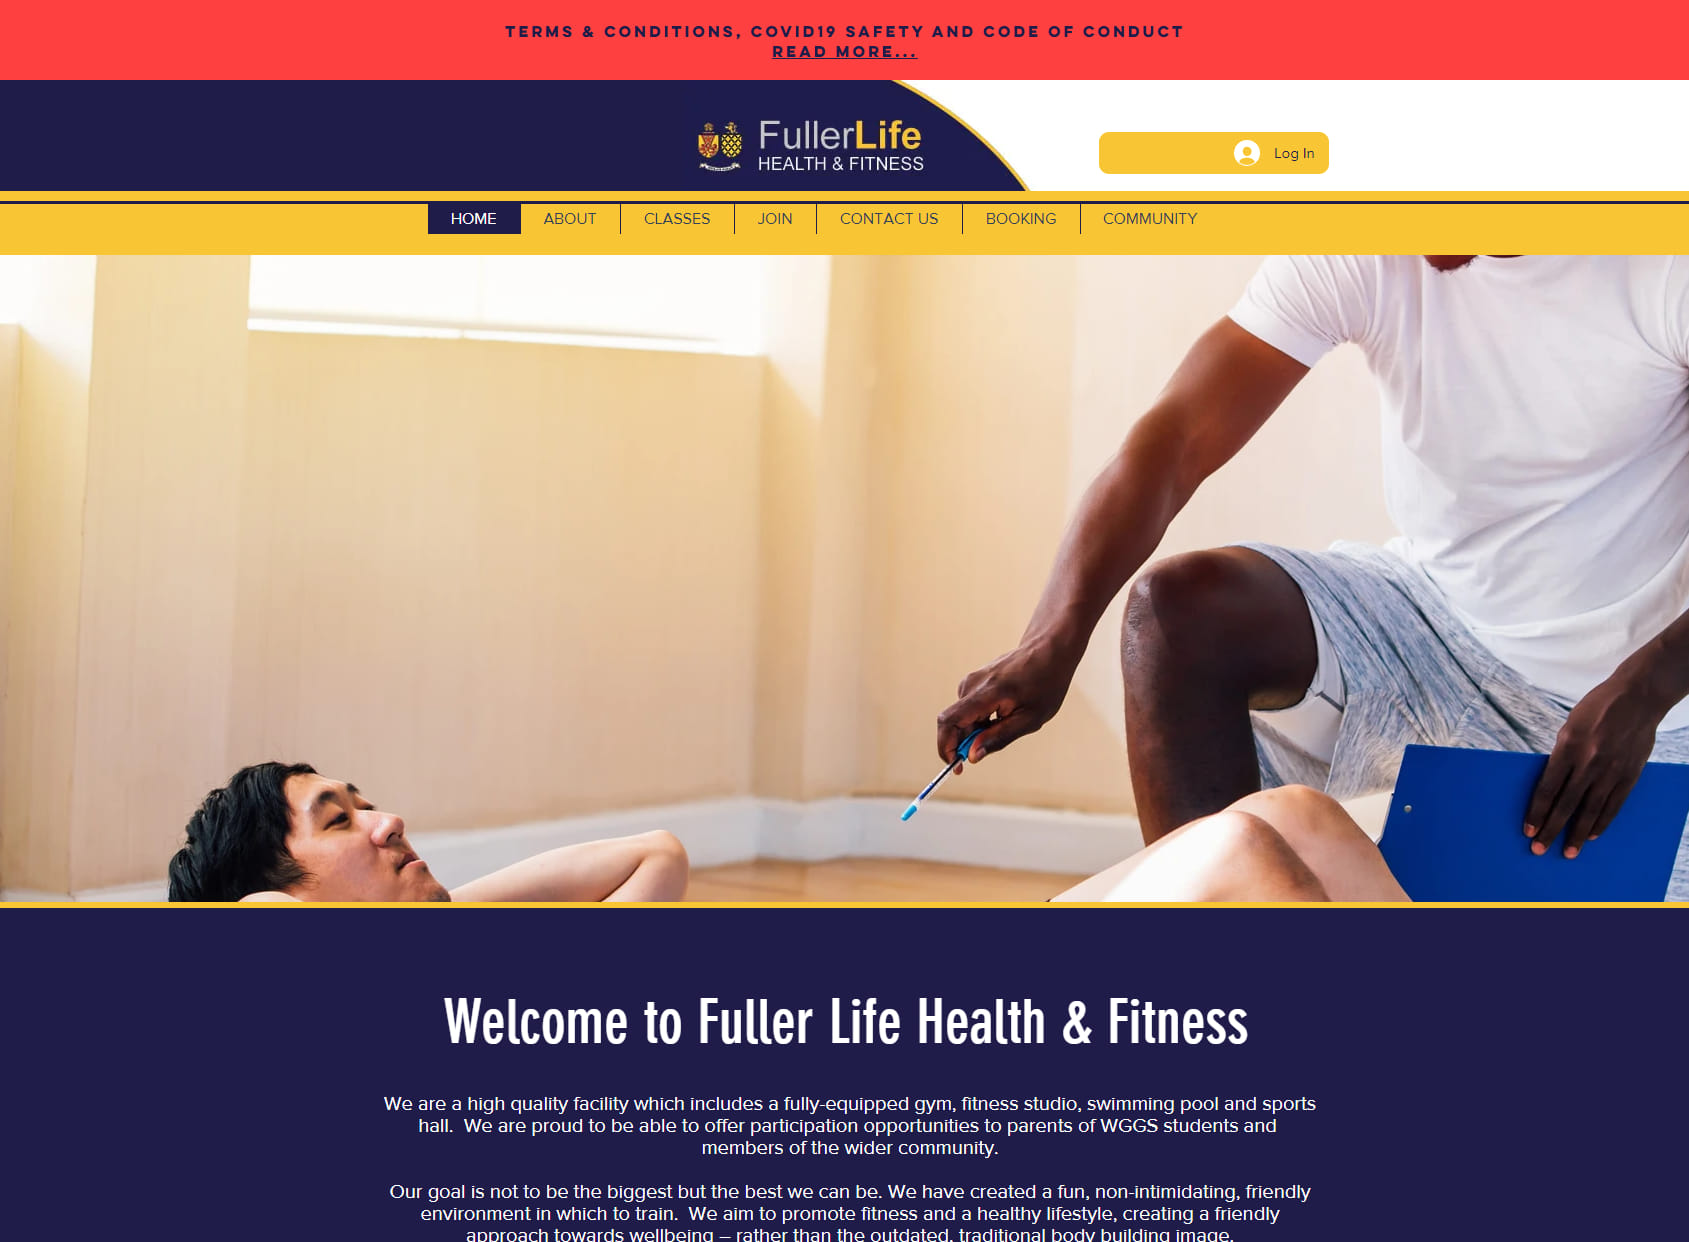 Fullerlife Health & Fitness Centre